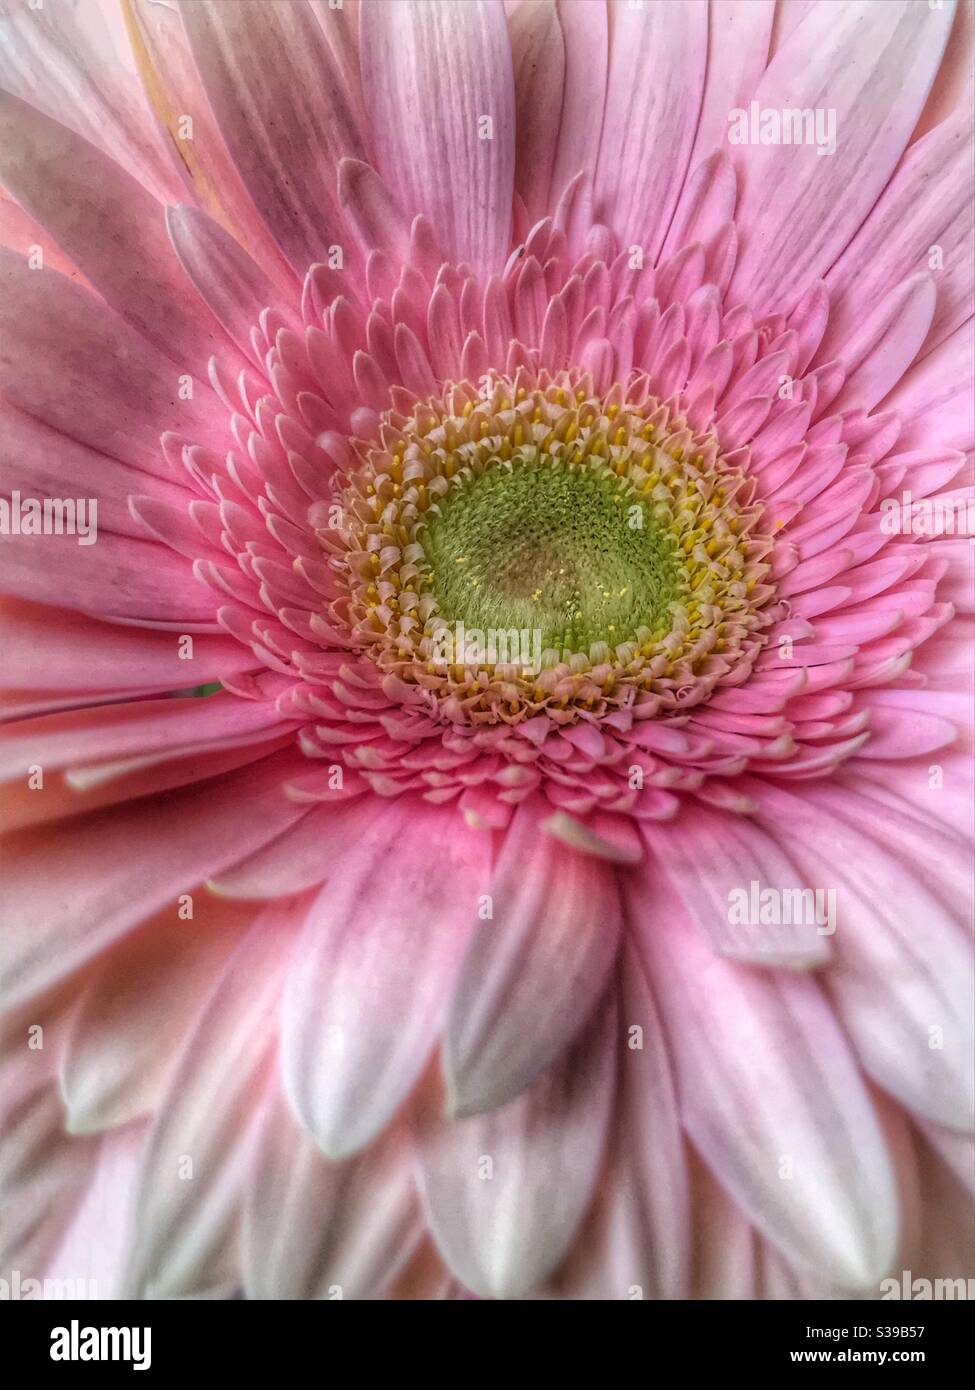 Pink Gerbera daisy close up Stock Photo